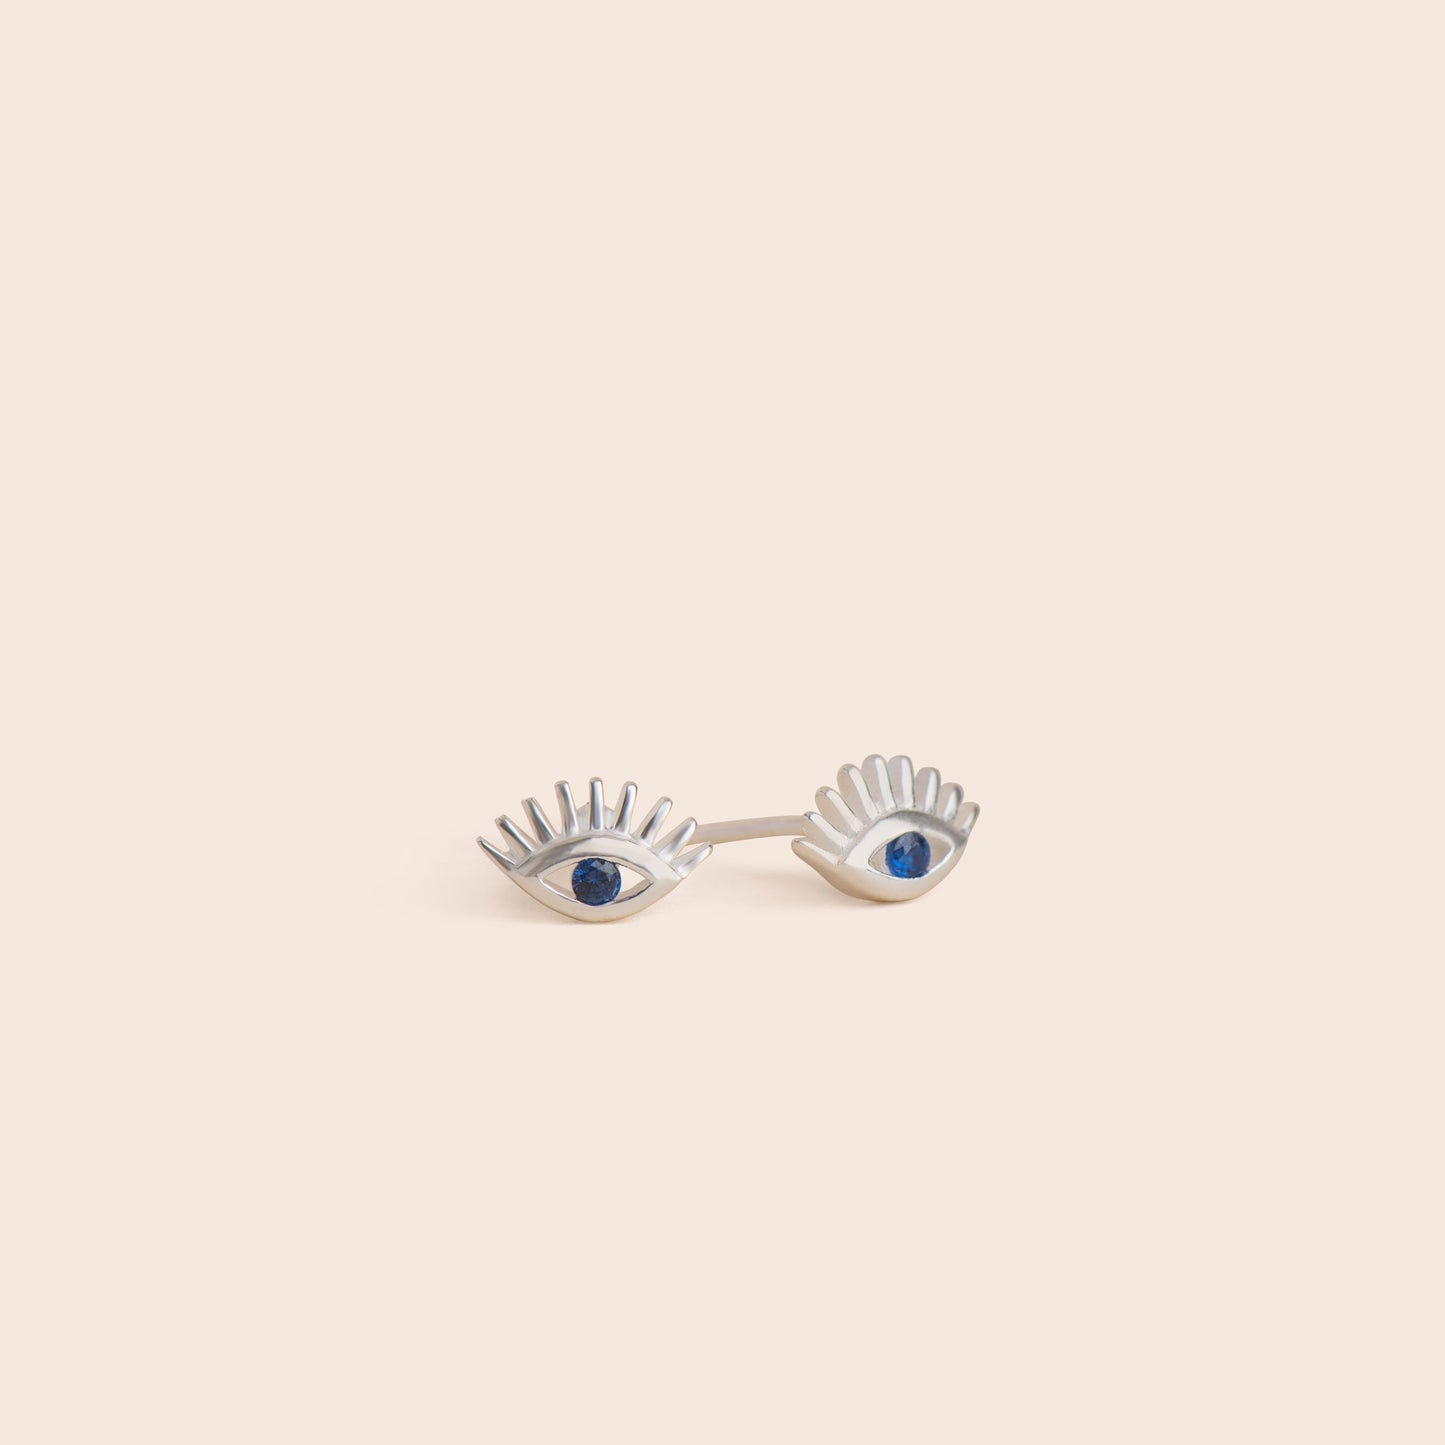 Load image into Gallery viewer, Silver Evil Eye Stud Earrings - Gemlet
